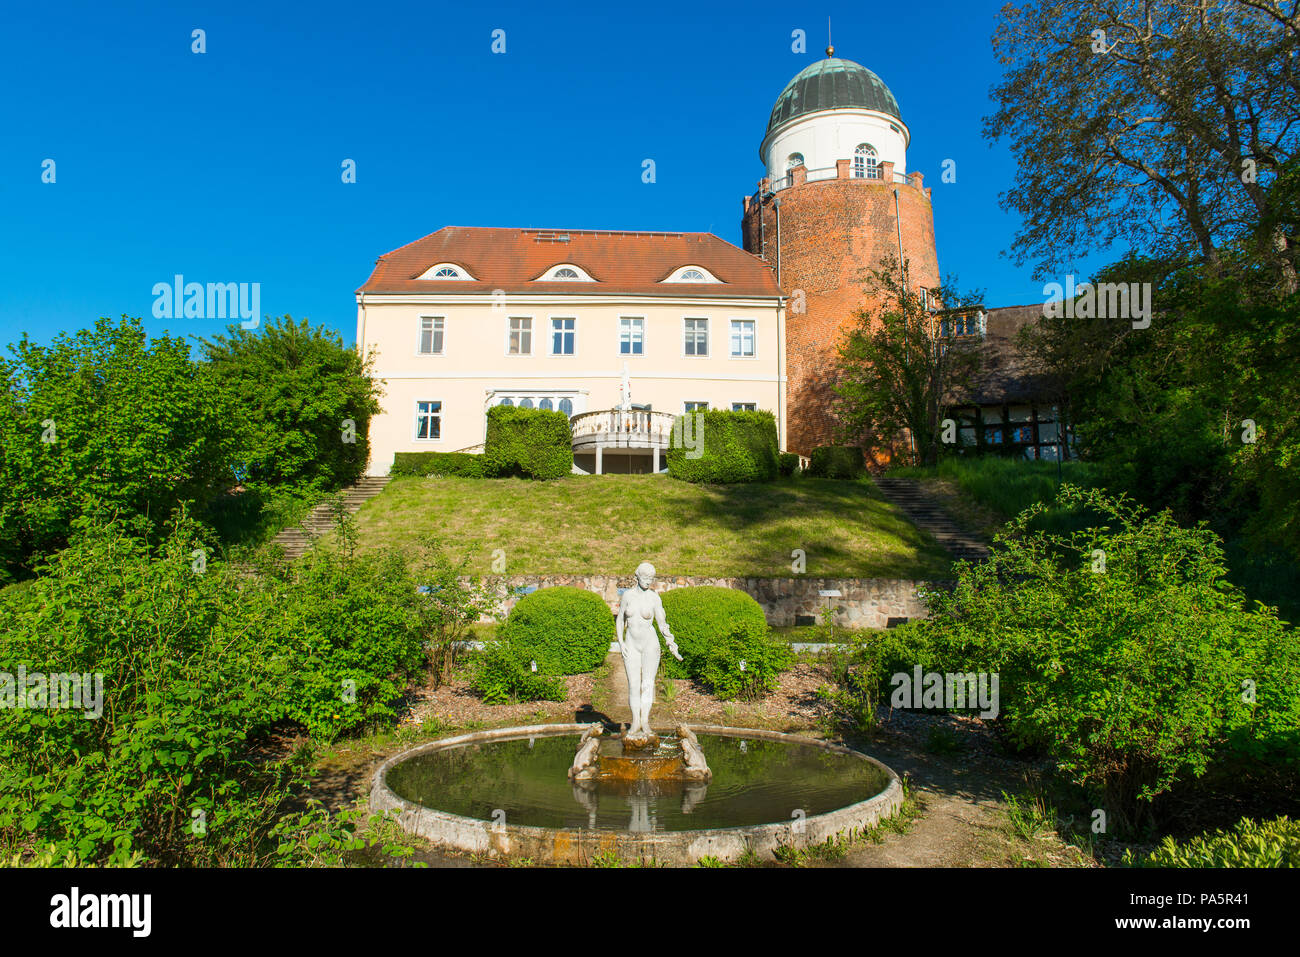 Park und Burg Lenzen, Besucherzentrum des Biosphärenreservats Flusslandschaft Elbe, Lenzen, Prignitz, Brandenburg, Deutschland Stockfoto